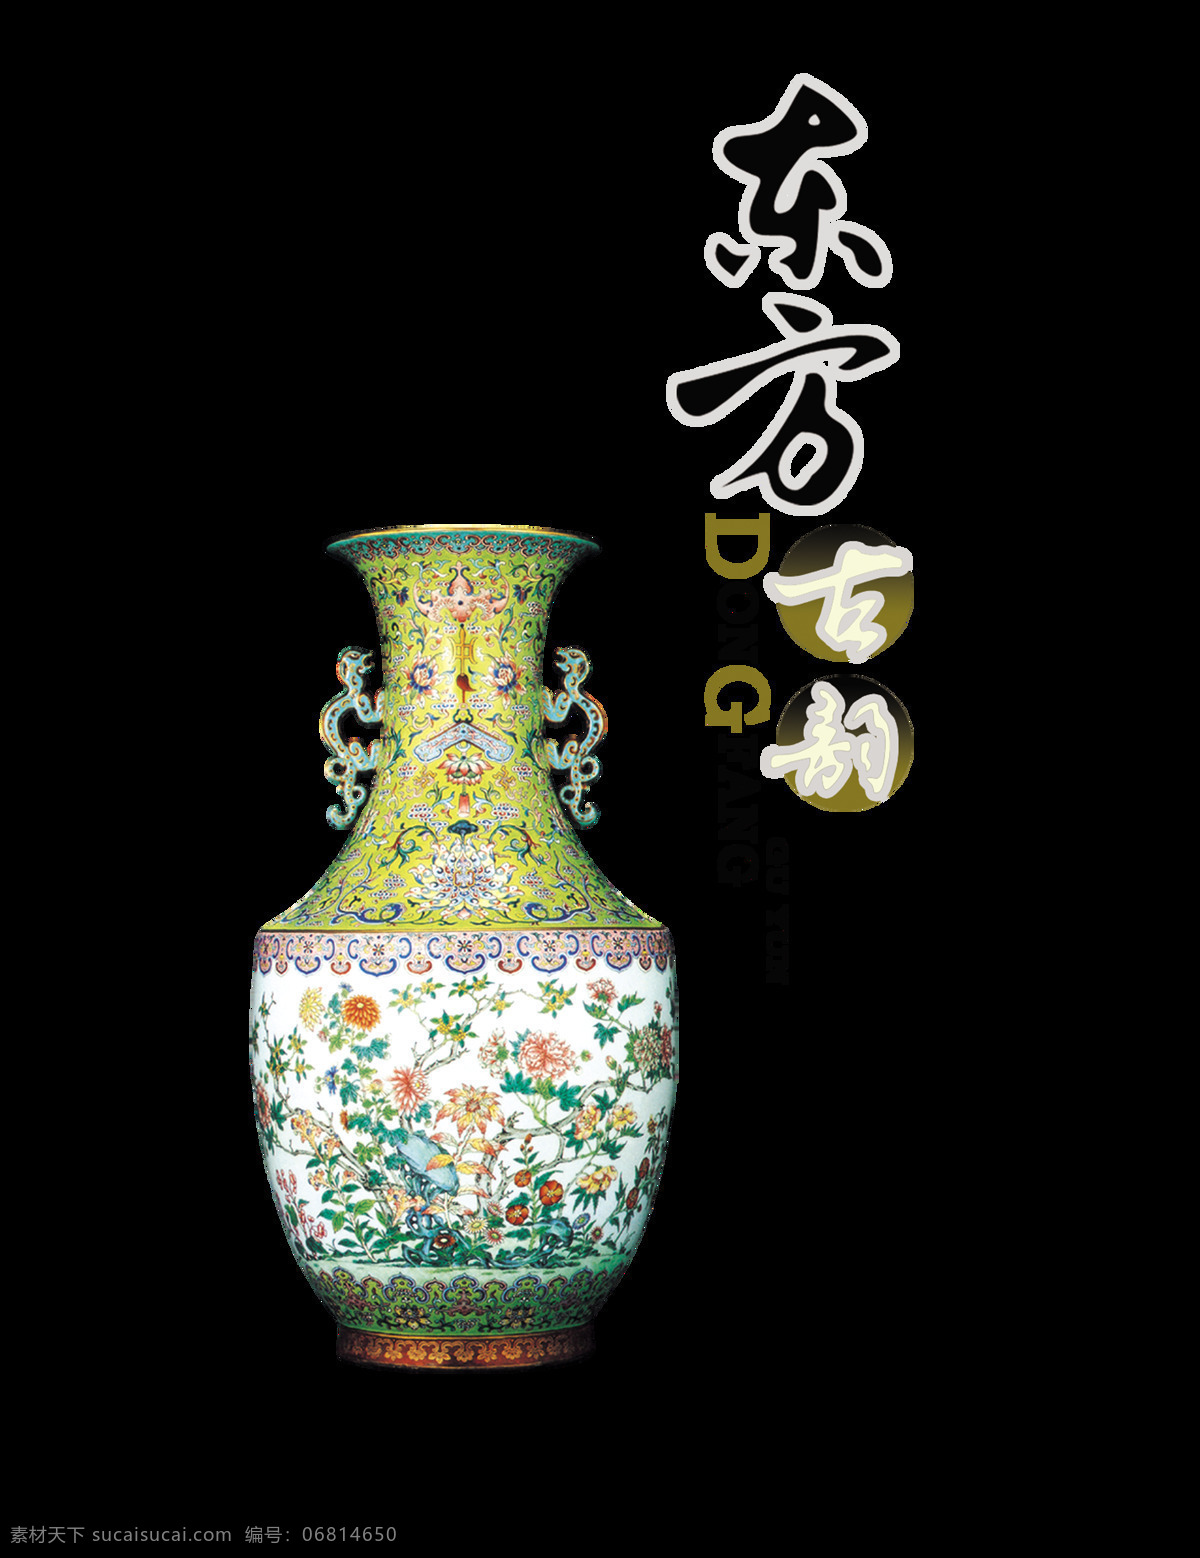 东方 古韵 瓷器 中国 风 艺术 字 中国风 古典 传统 文化 东方古韵瓷器 韵味 古风 免抠图 元素 传承